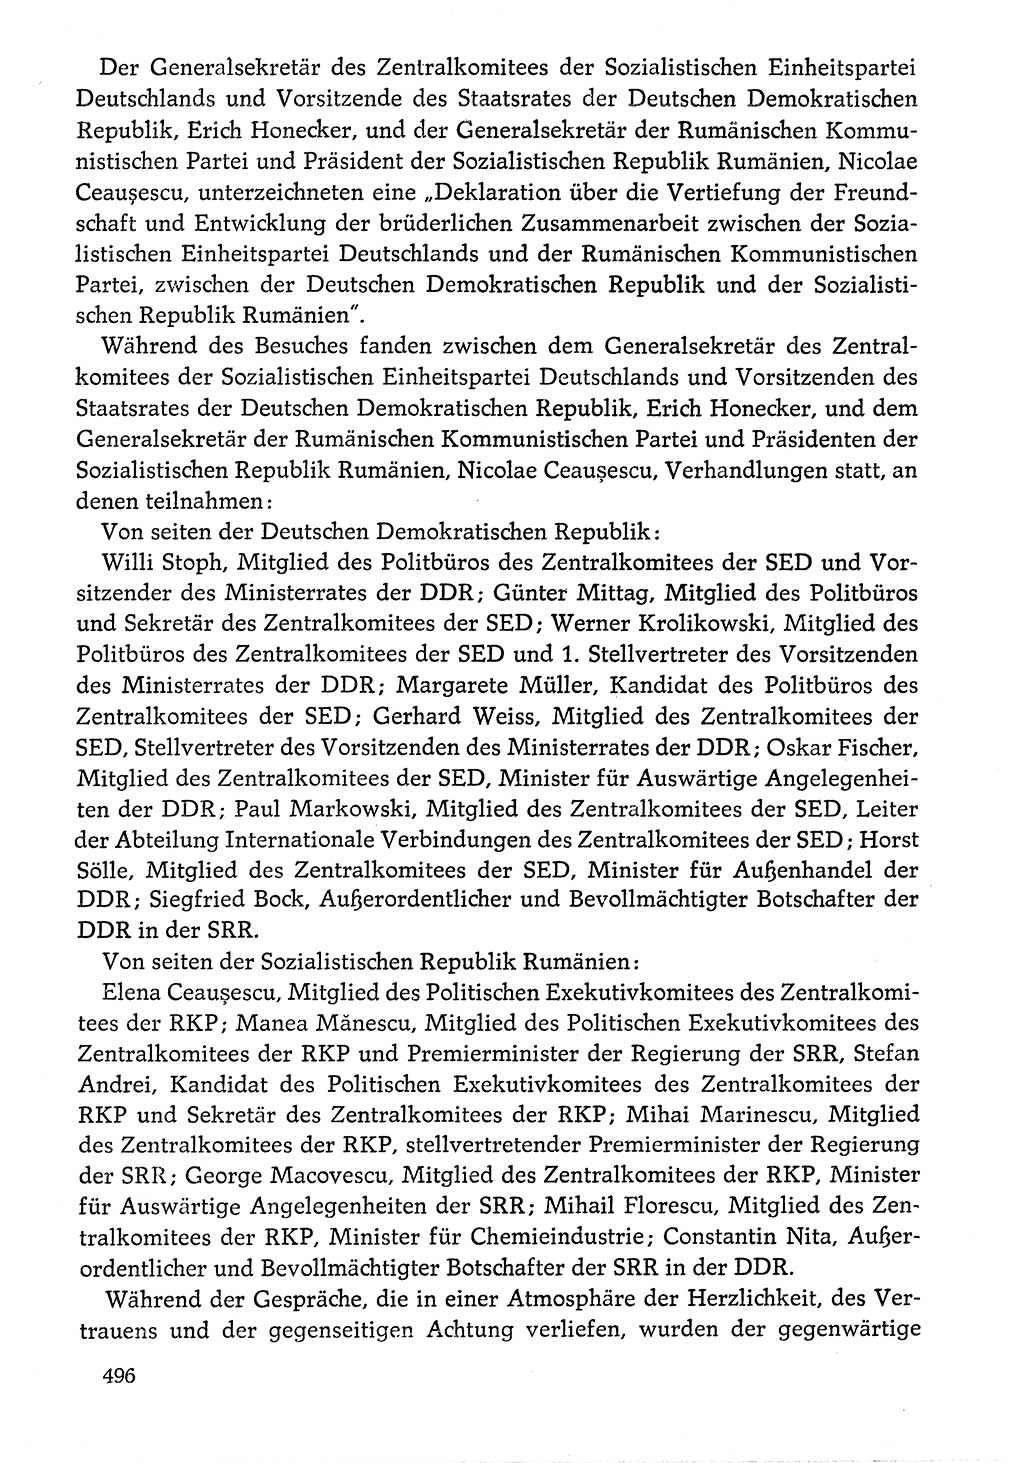 Dokumente der Sozialistischen Einheitspartei Deutschlands (SED) [Deutsche Demokratische Republik (DDR)] 1976-1977, Seite 496 (Dok. SED DDR 1976-1977, S. 496)